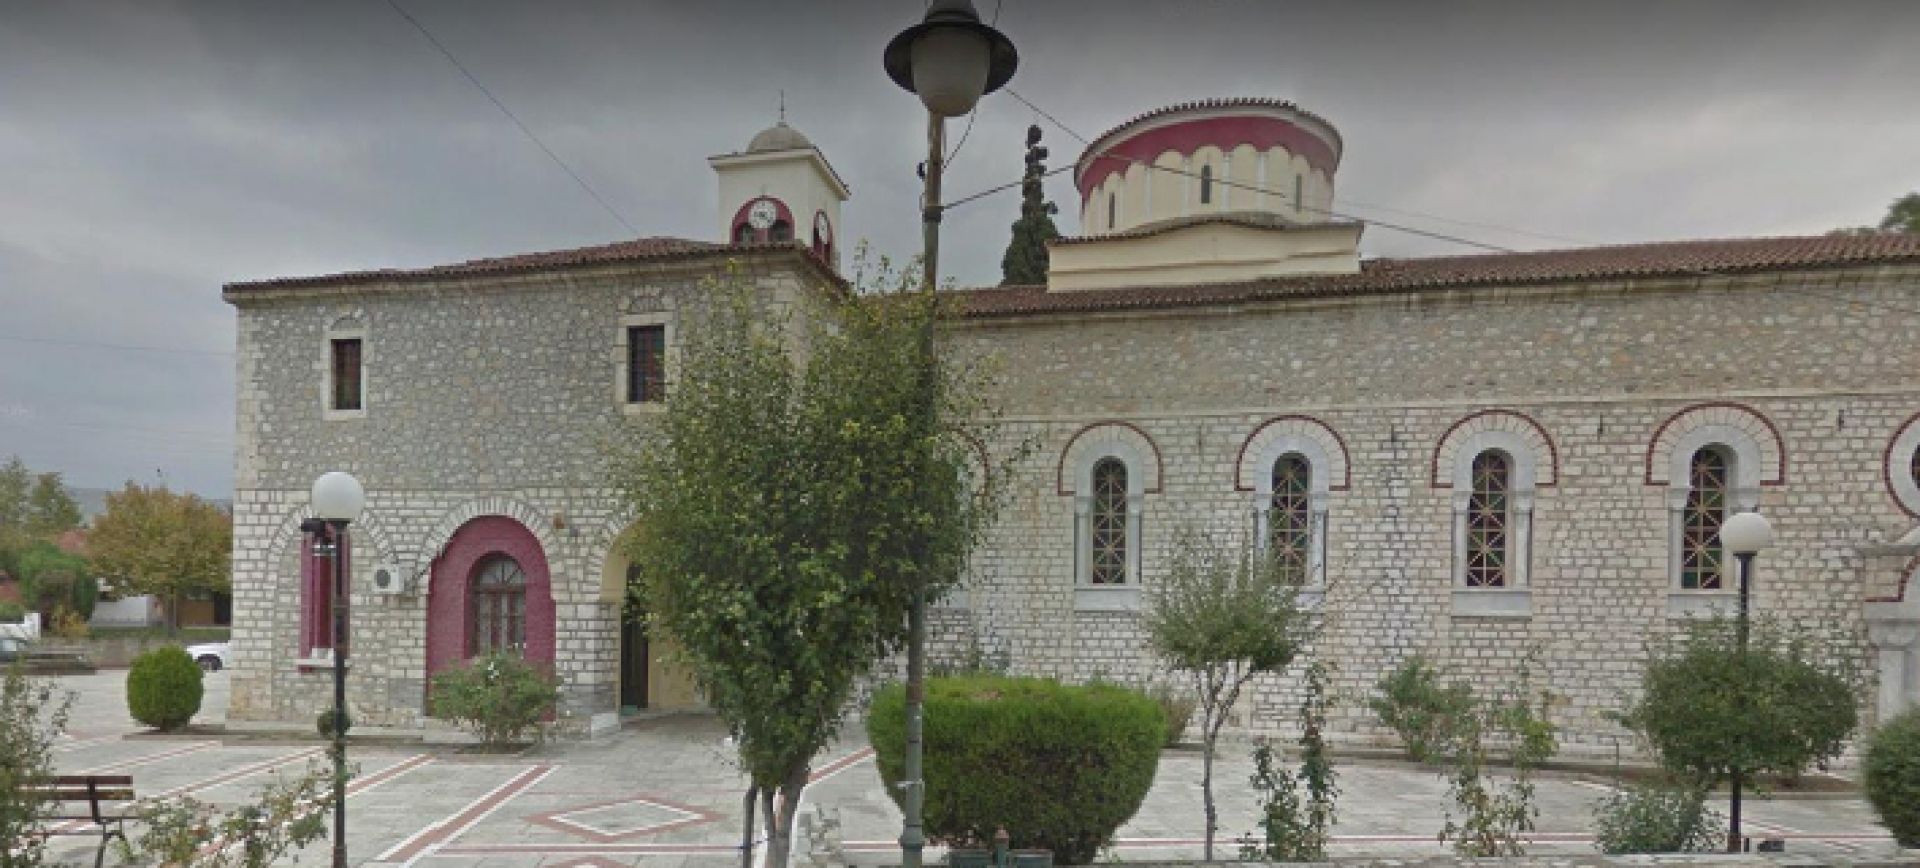 Εξελίξεις στην υπόθεση κλοπής σε ναό στον Τύρναβο- Επέστρεψαν τις εικόνες αλλά όχι τα 140.000 ευρώ